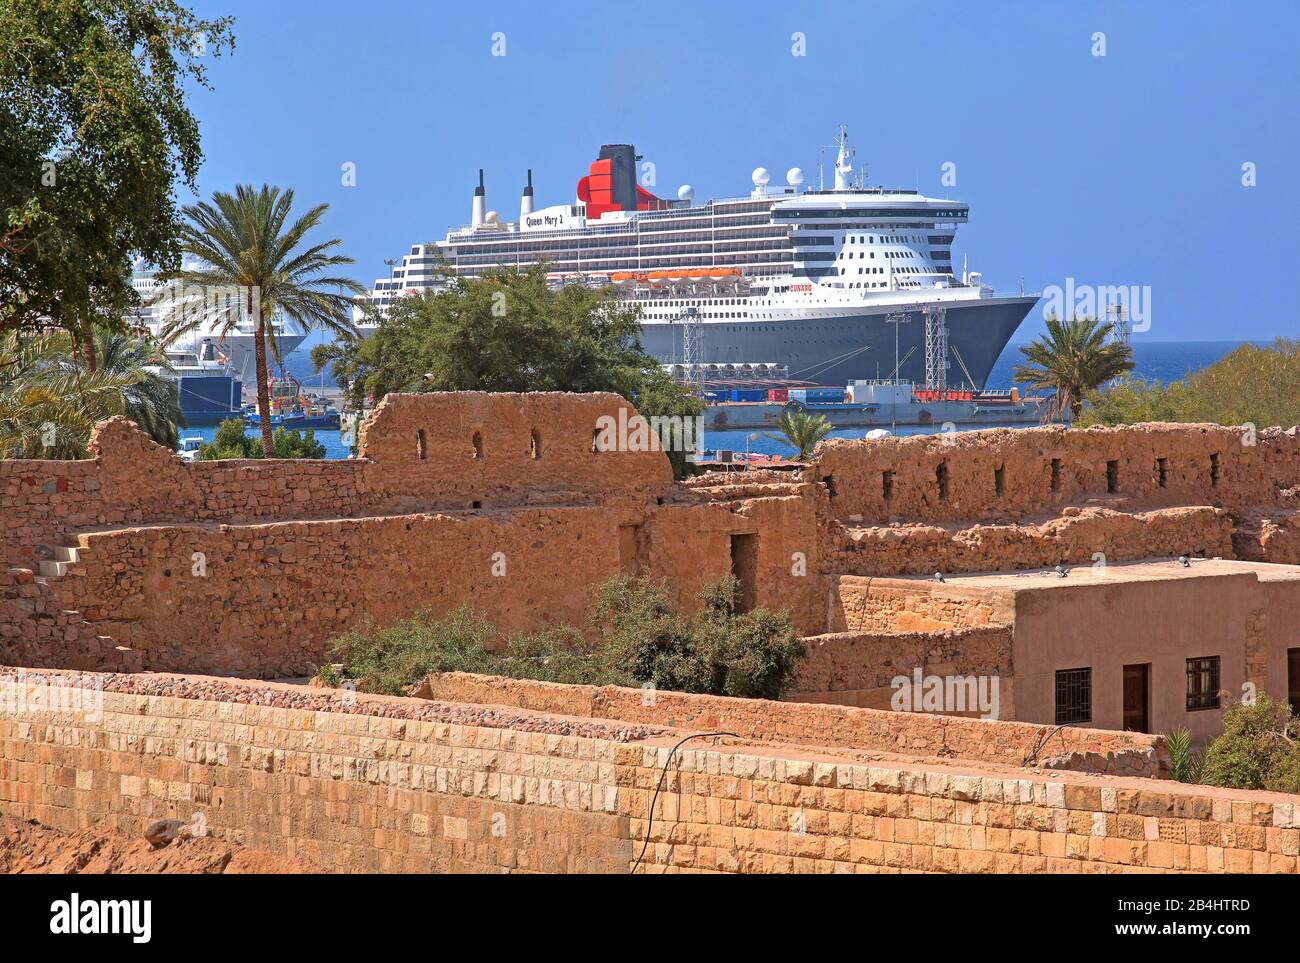 Historische Ruinen des Fort- und Kreuzfahrtschiffs Queen Mary 2 im Hafen Akaba Akaba, Golf von Akaba, Rotes Meer, Jordanien Stockfoto